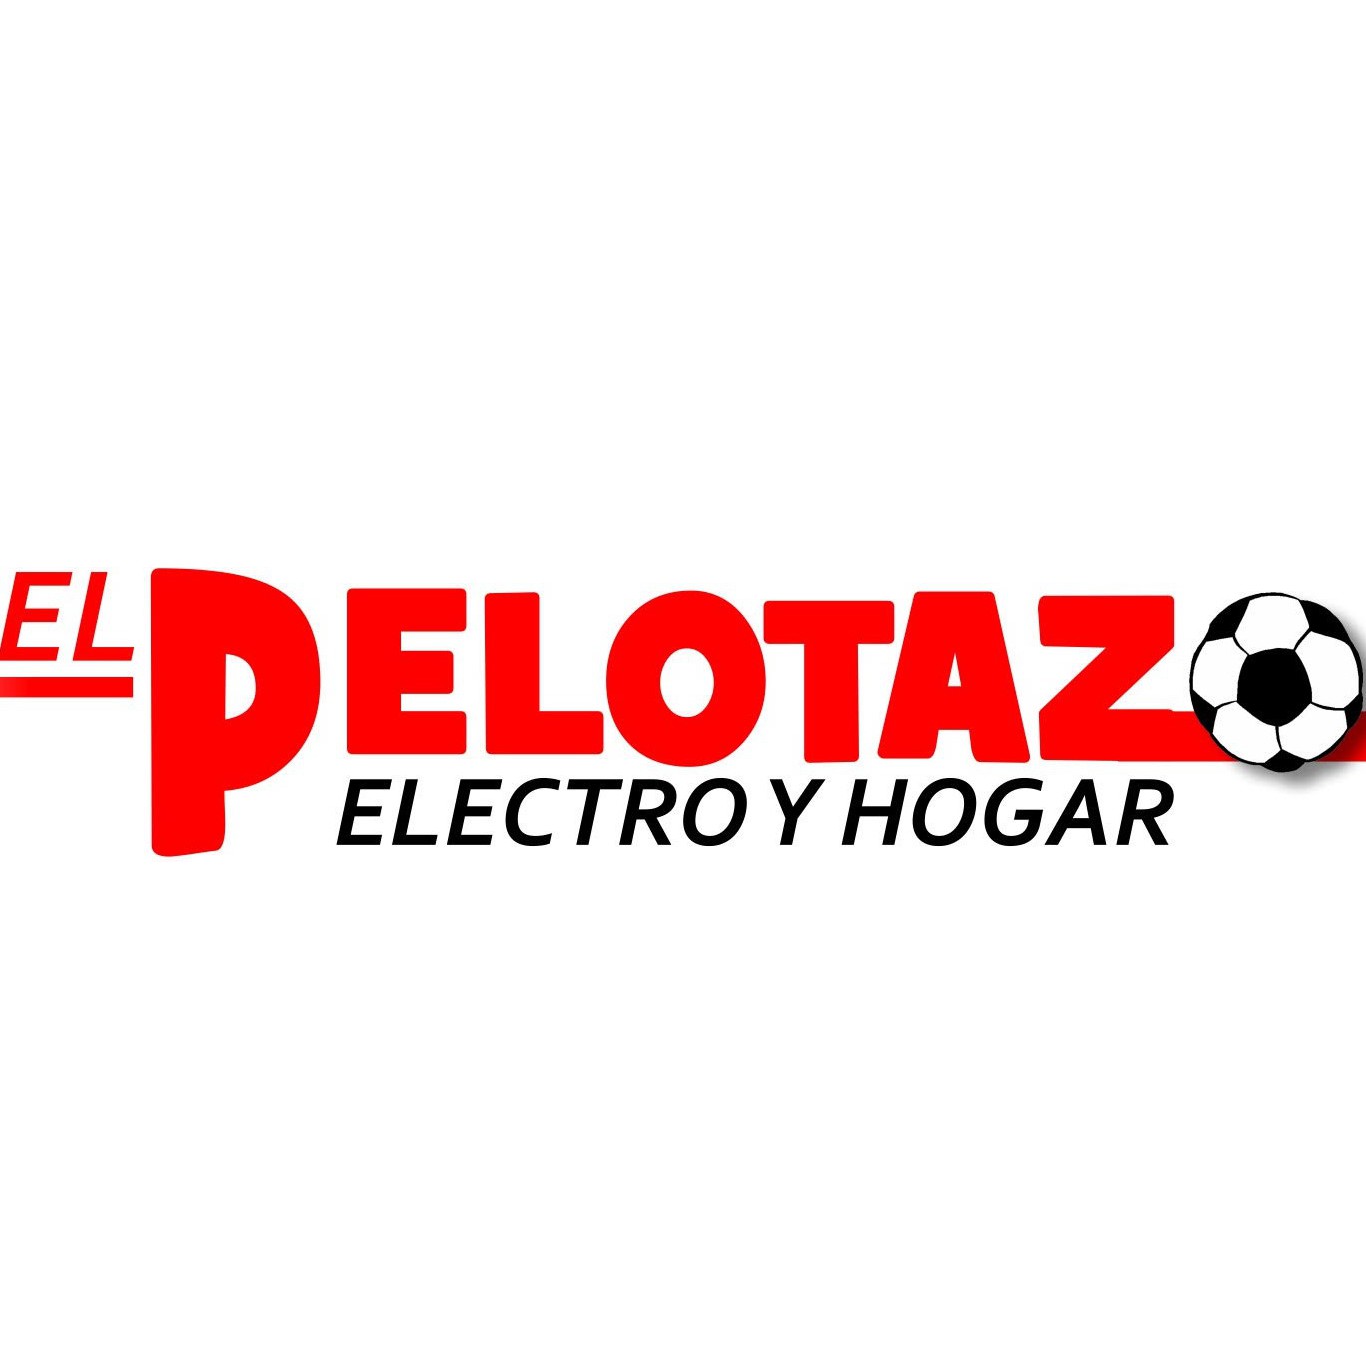 El Pelotazo Electro Y Hogar Logo